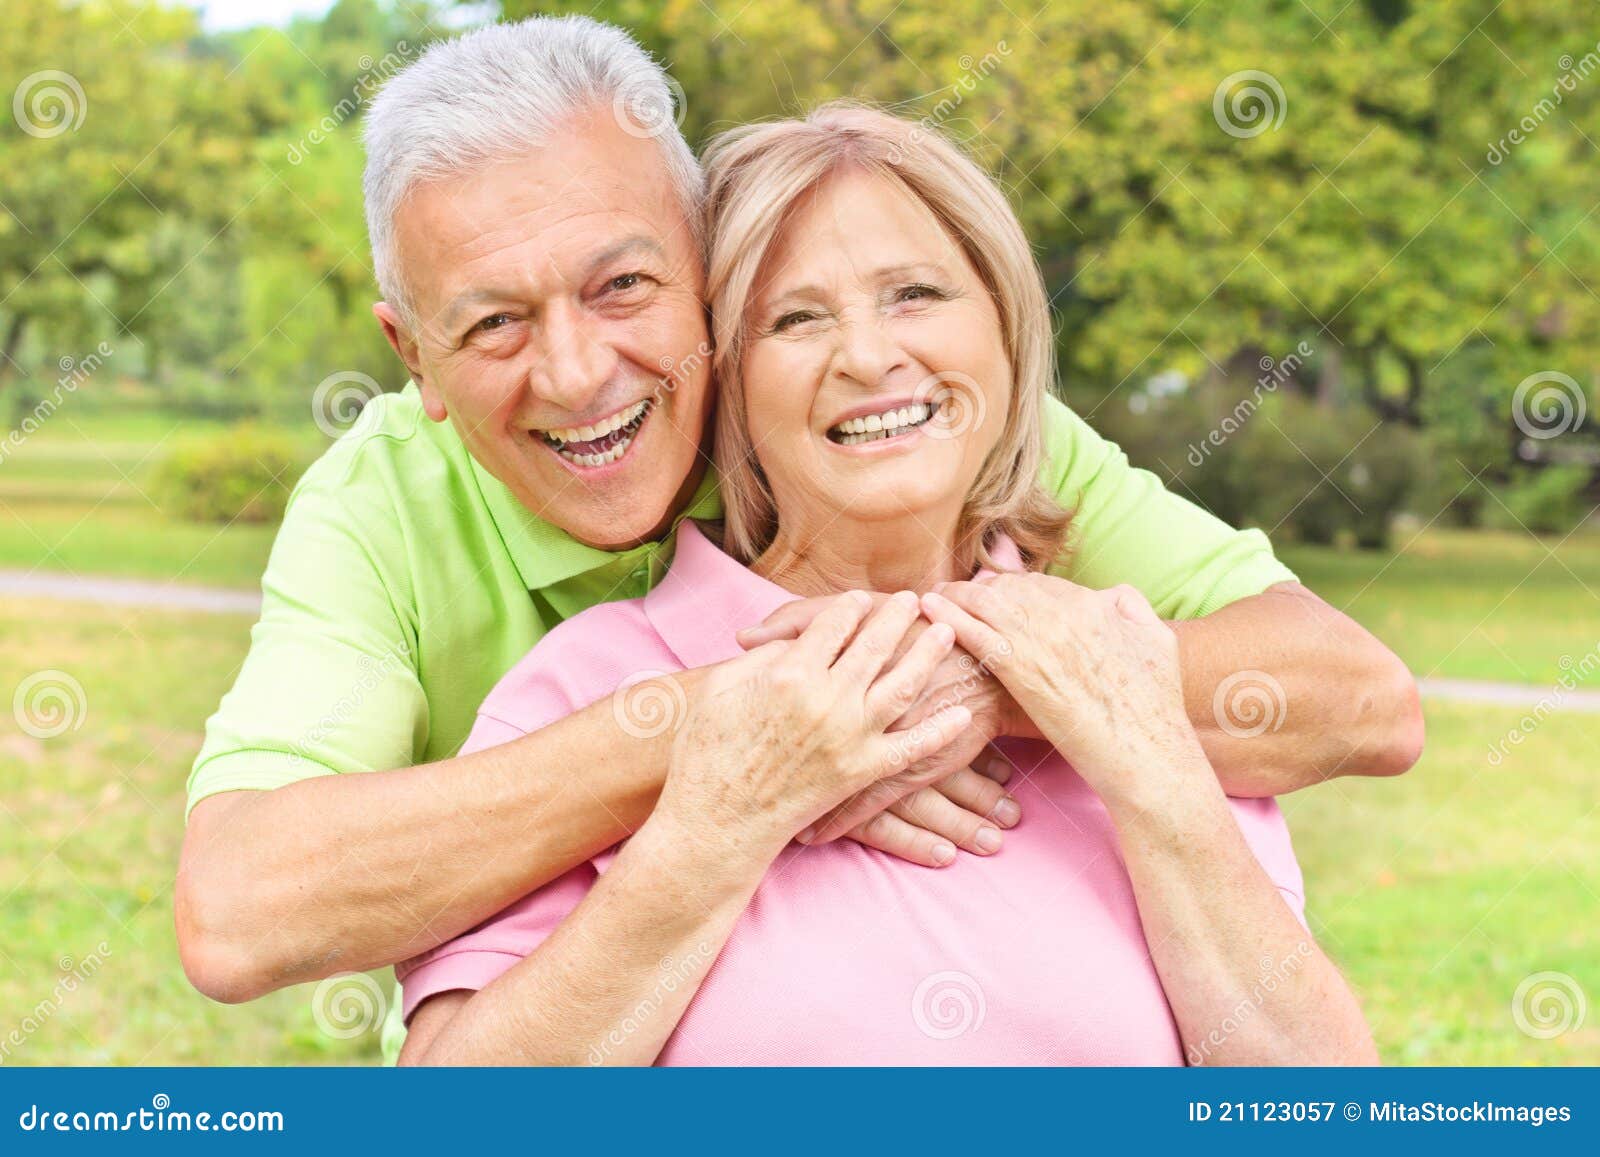 Gelukkige oude mensen in openlucht. Portret van een gelukkig bejaard paar in openlucht.